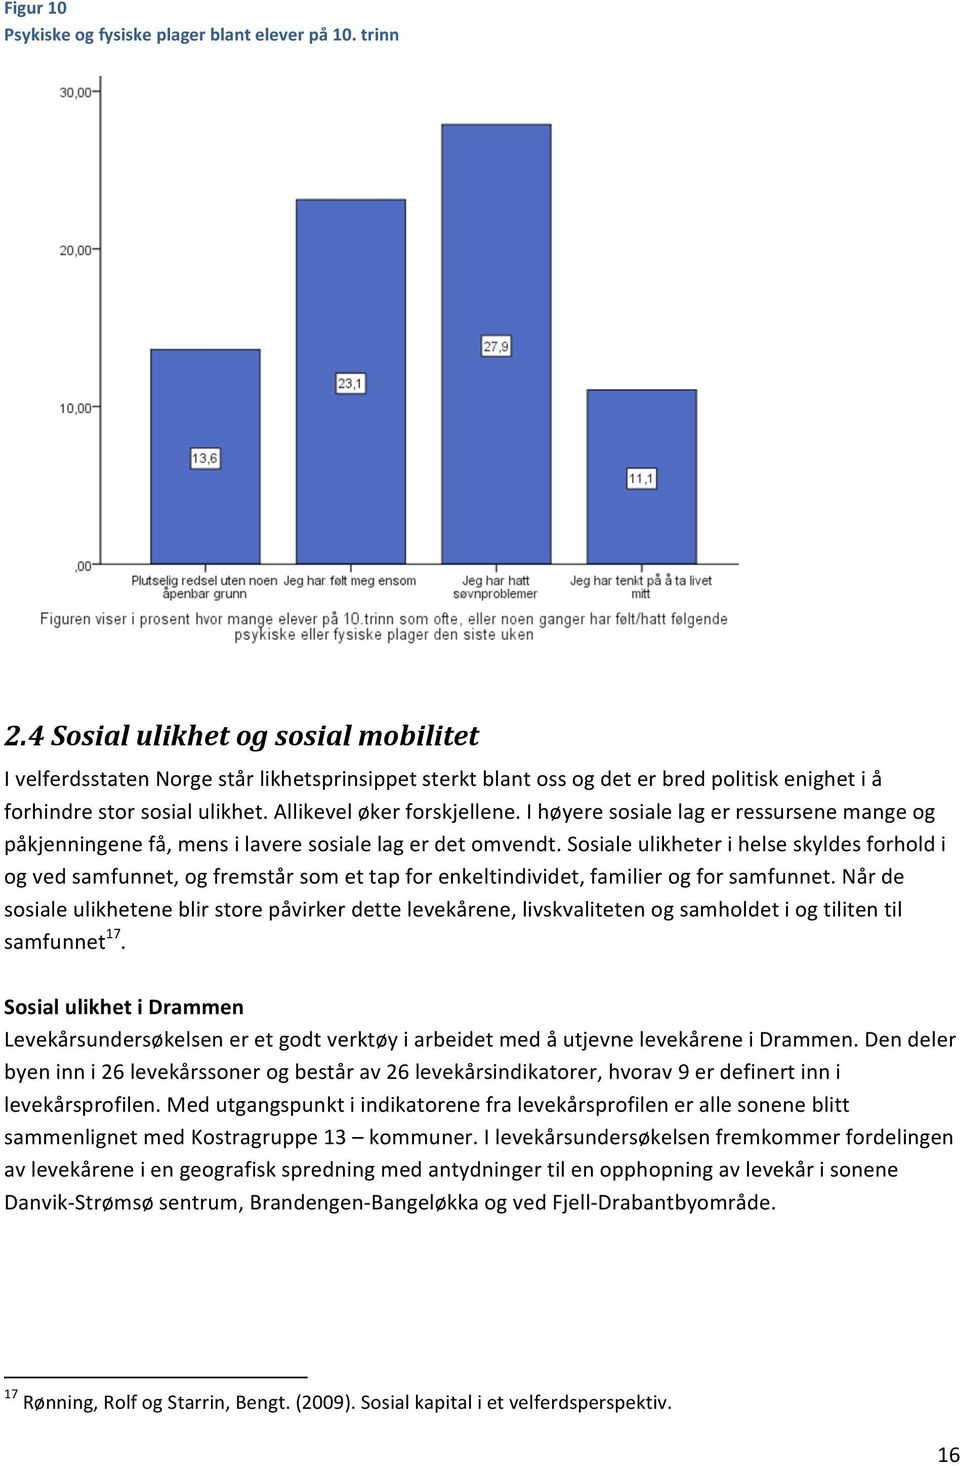 I høyere sosiale lag er ressursene mange og påkjenningene få, mens i lavere sosiale lag er det omvendt.